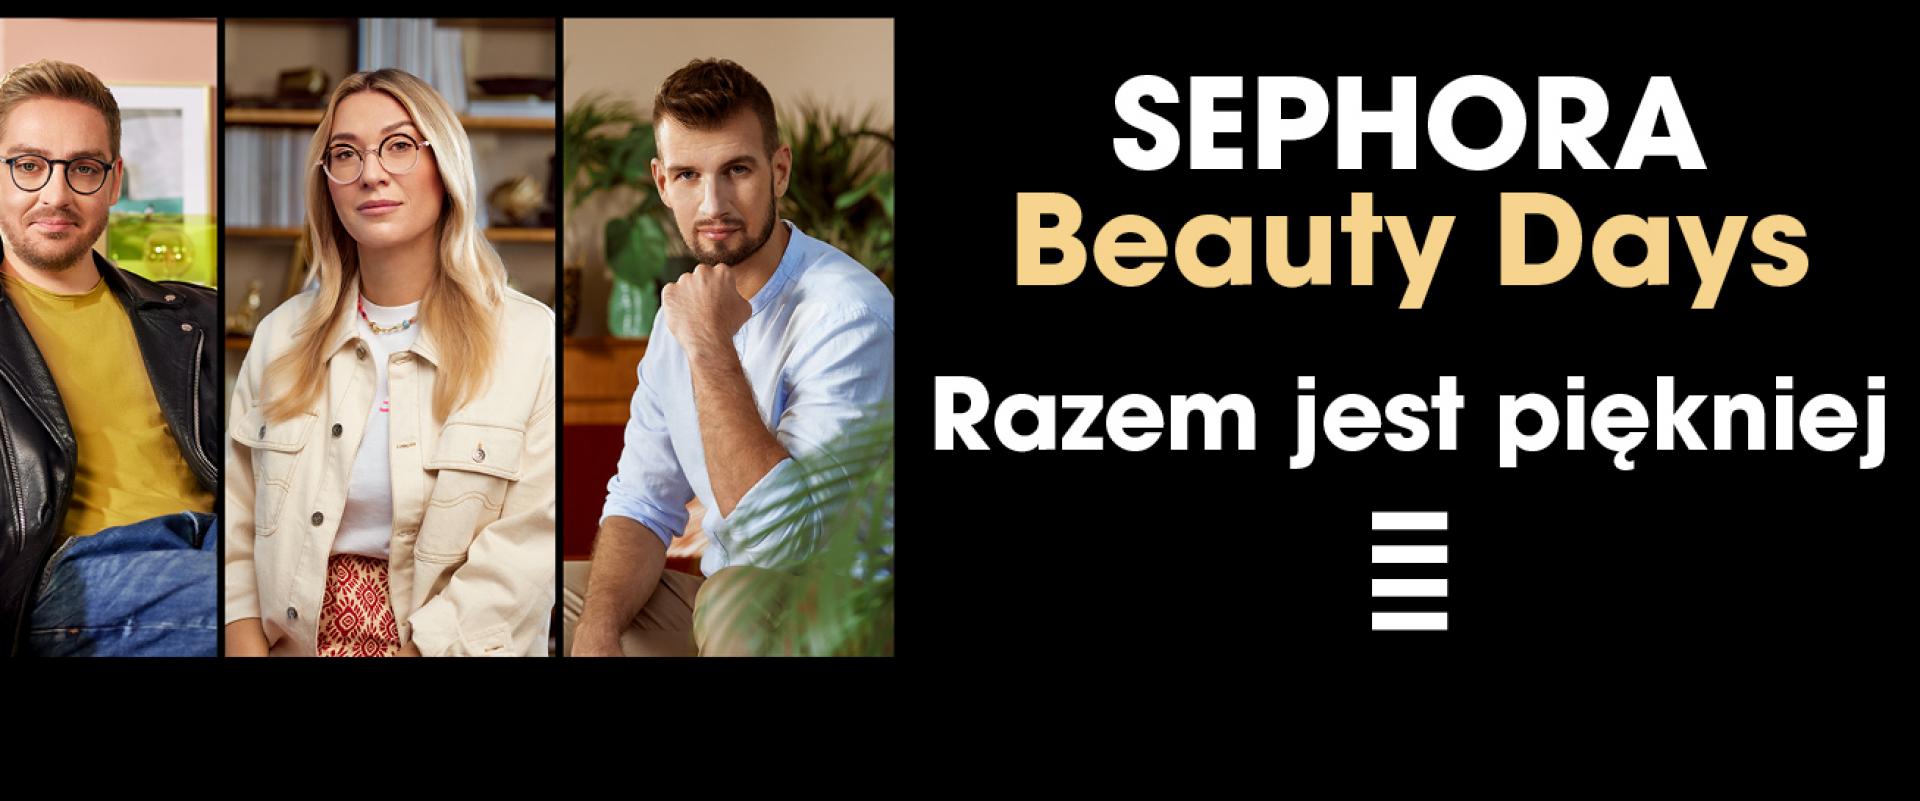 Razem jest piękniej! Ruszyła akcja Sephora Beauty Days z udziałem przedstawicieli fundacji - partnerów Sephora